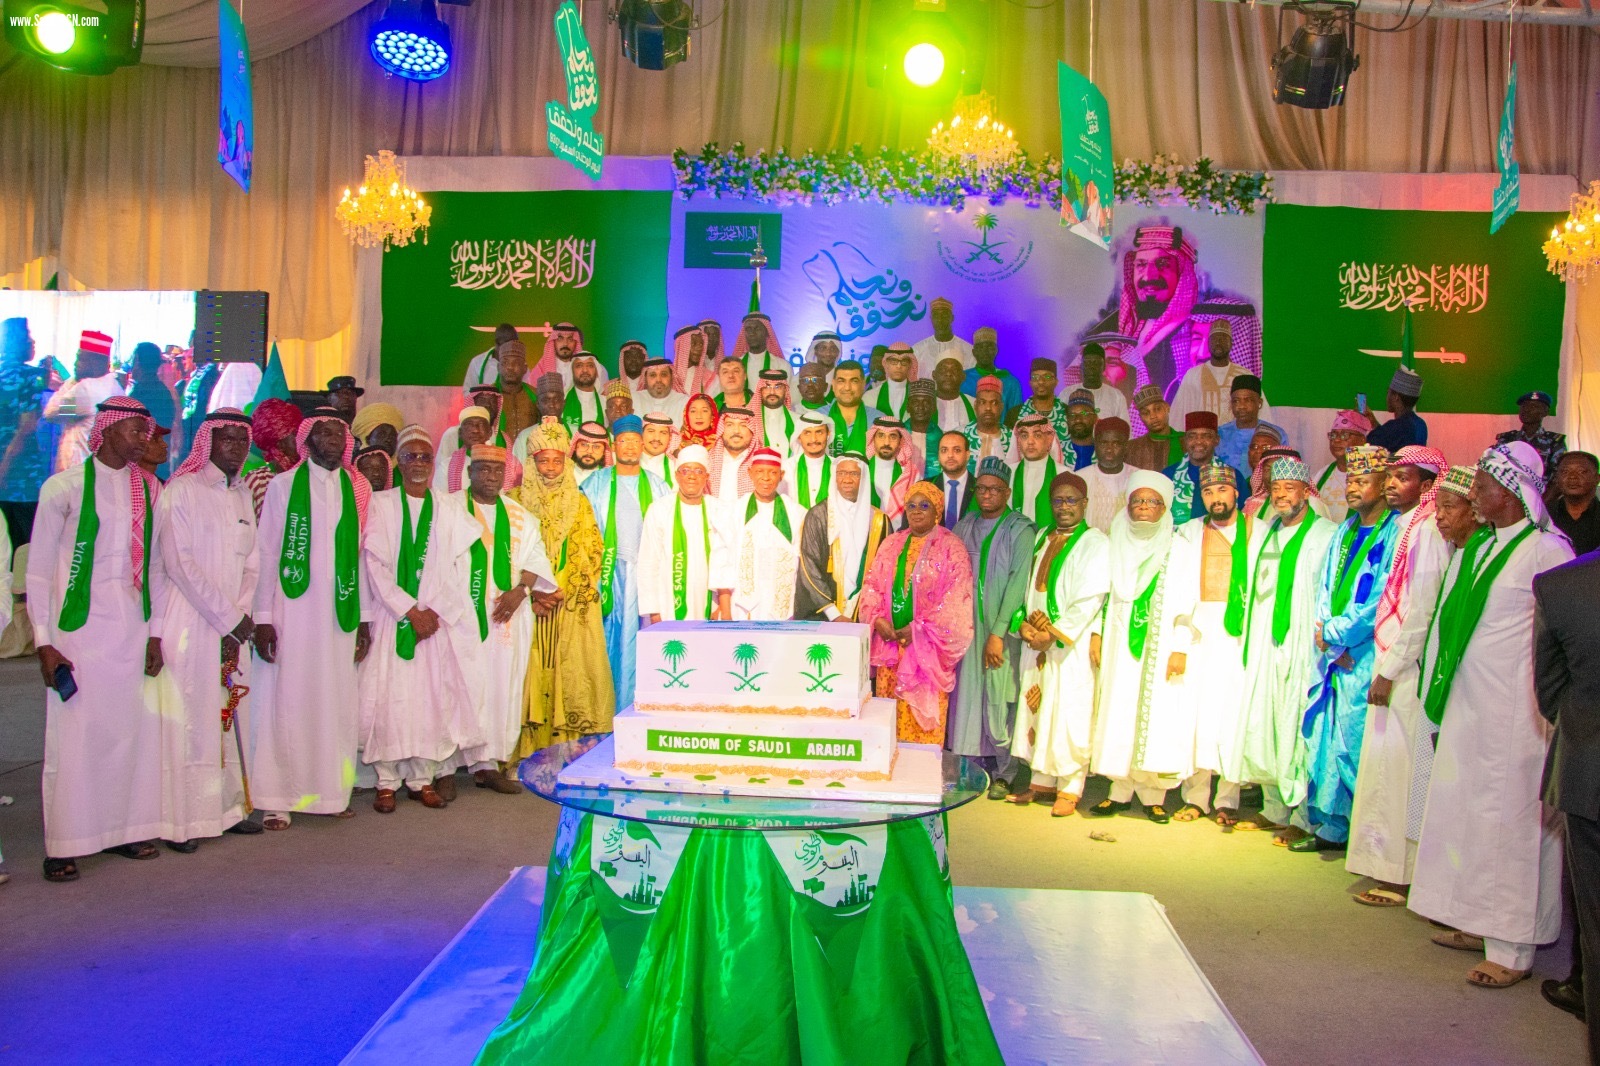 *القنصلية السعودية بمدينة كانو تحتفل باليوم الوطني(93)بنيجيريا*